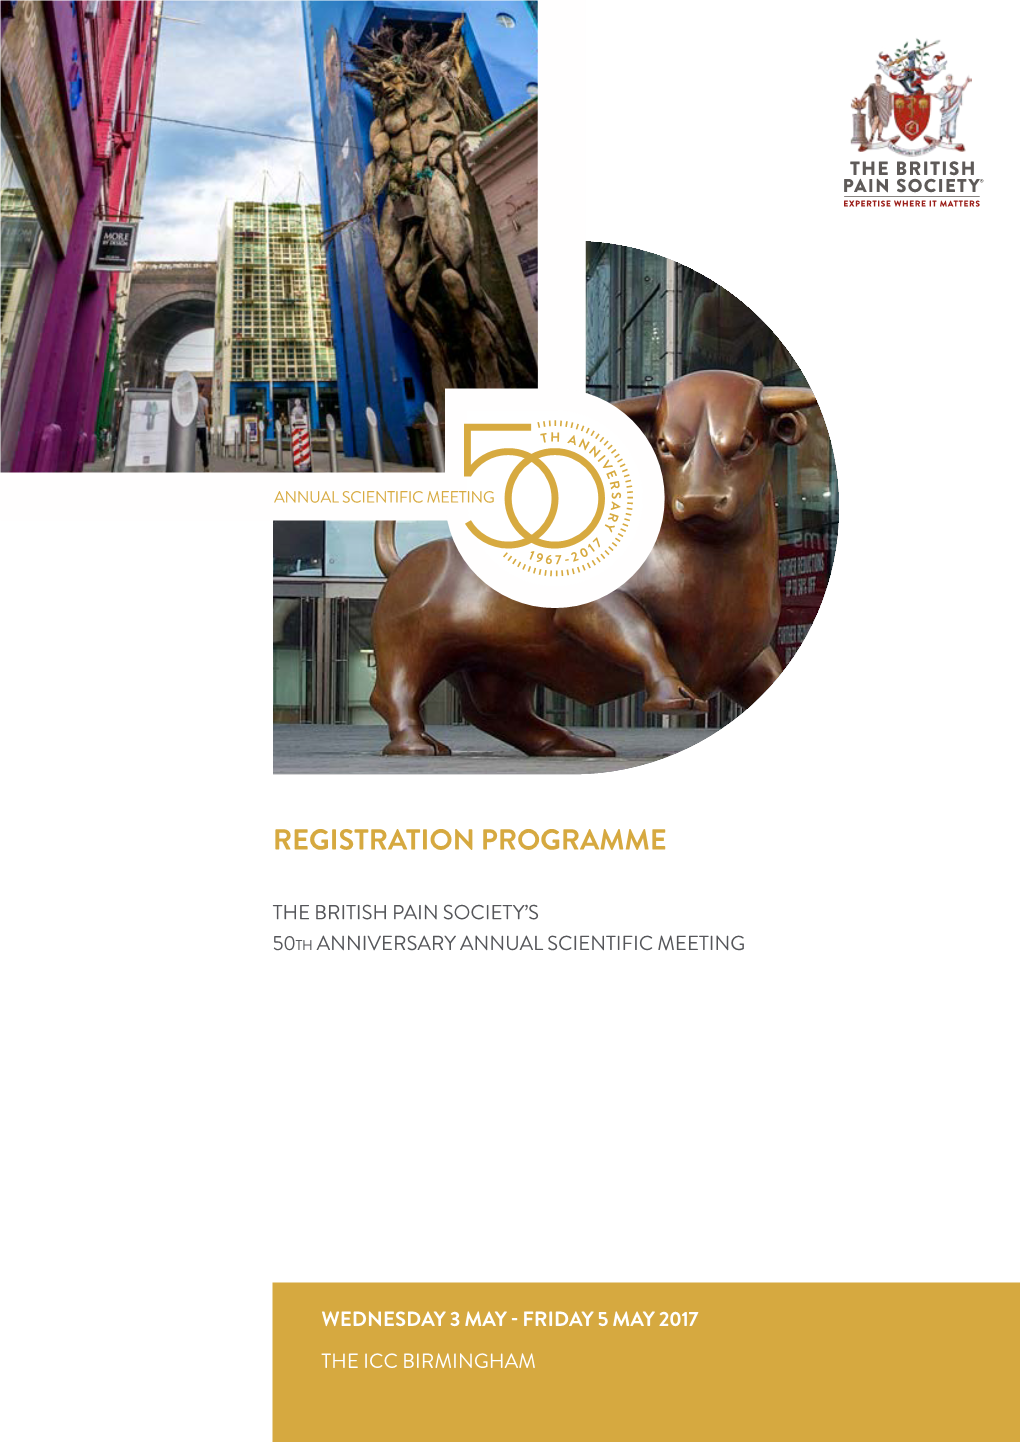 Registration Programme